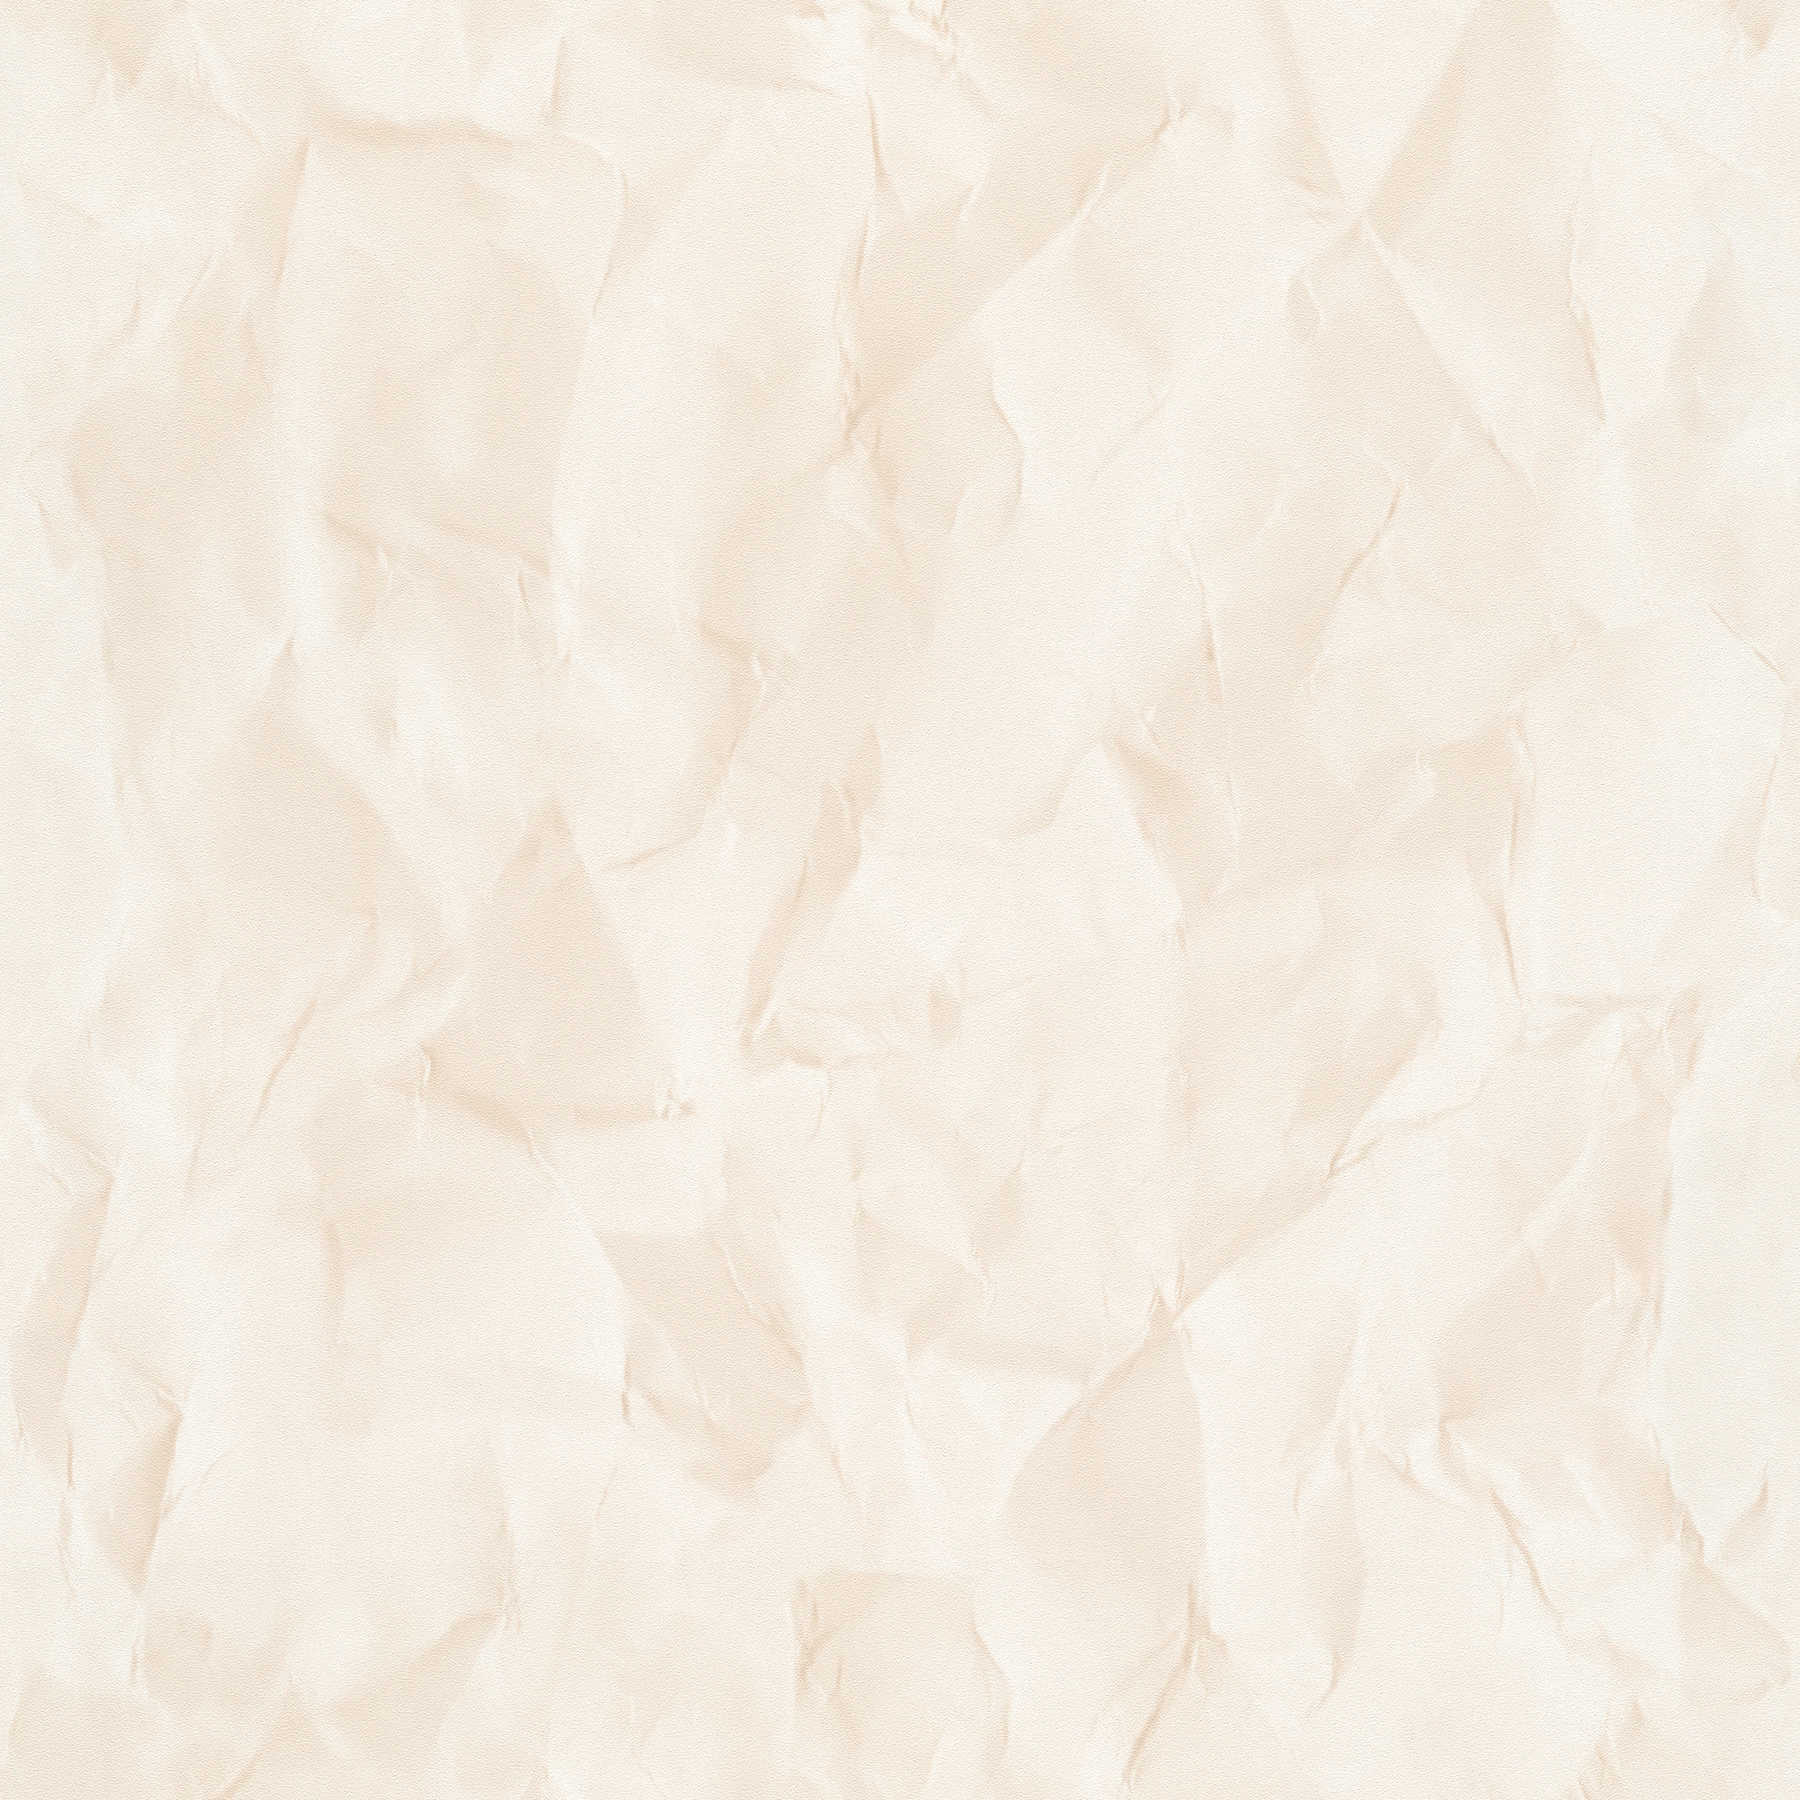 Vliesbehang met papiermotief in used look - beige
